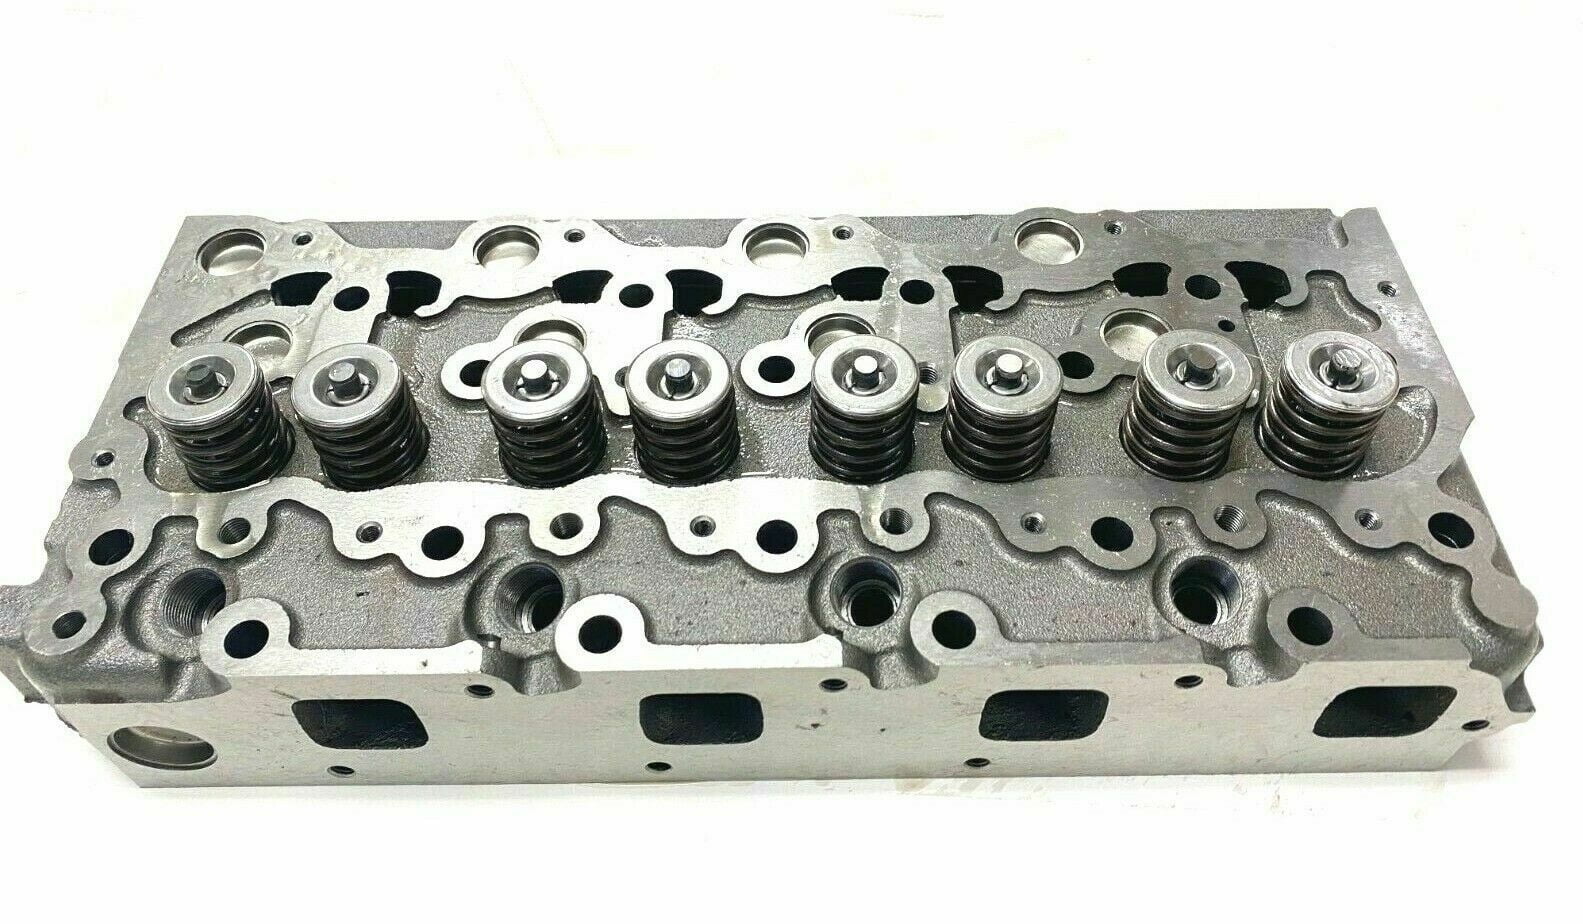 Arko Tractor Parts Cylinder Head Complete with Full Gasket Set Replacement for Kubota V2203 V2203T V2203E V2203B V2203-M-DI STD 16429-0304 - 3